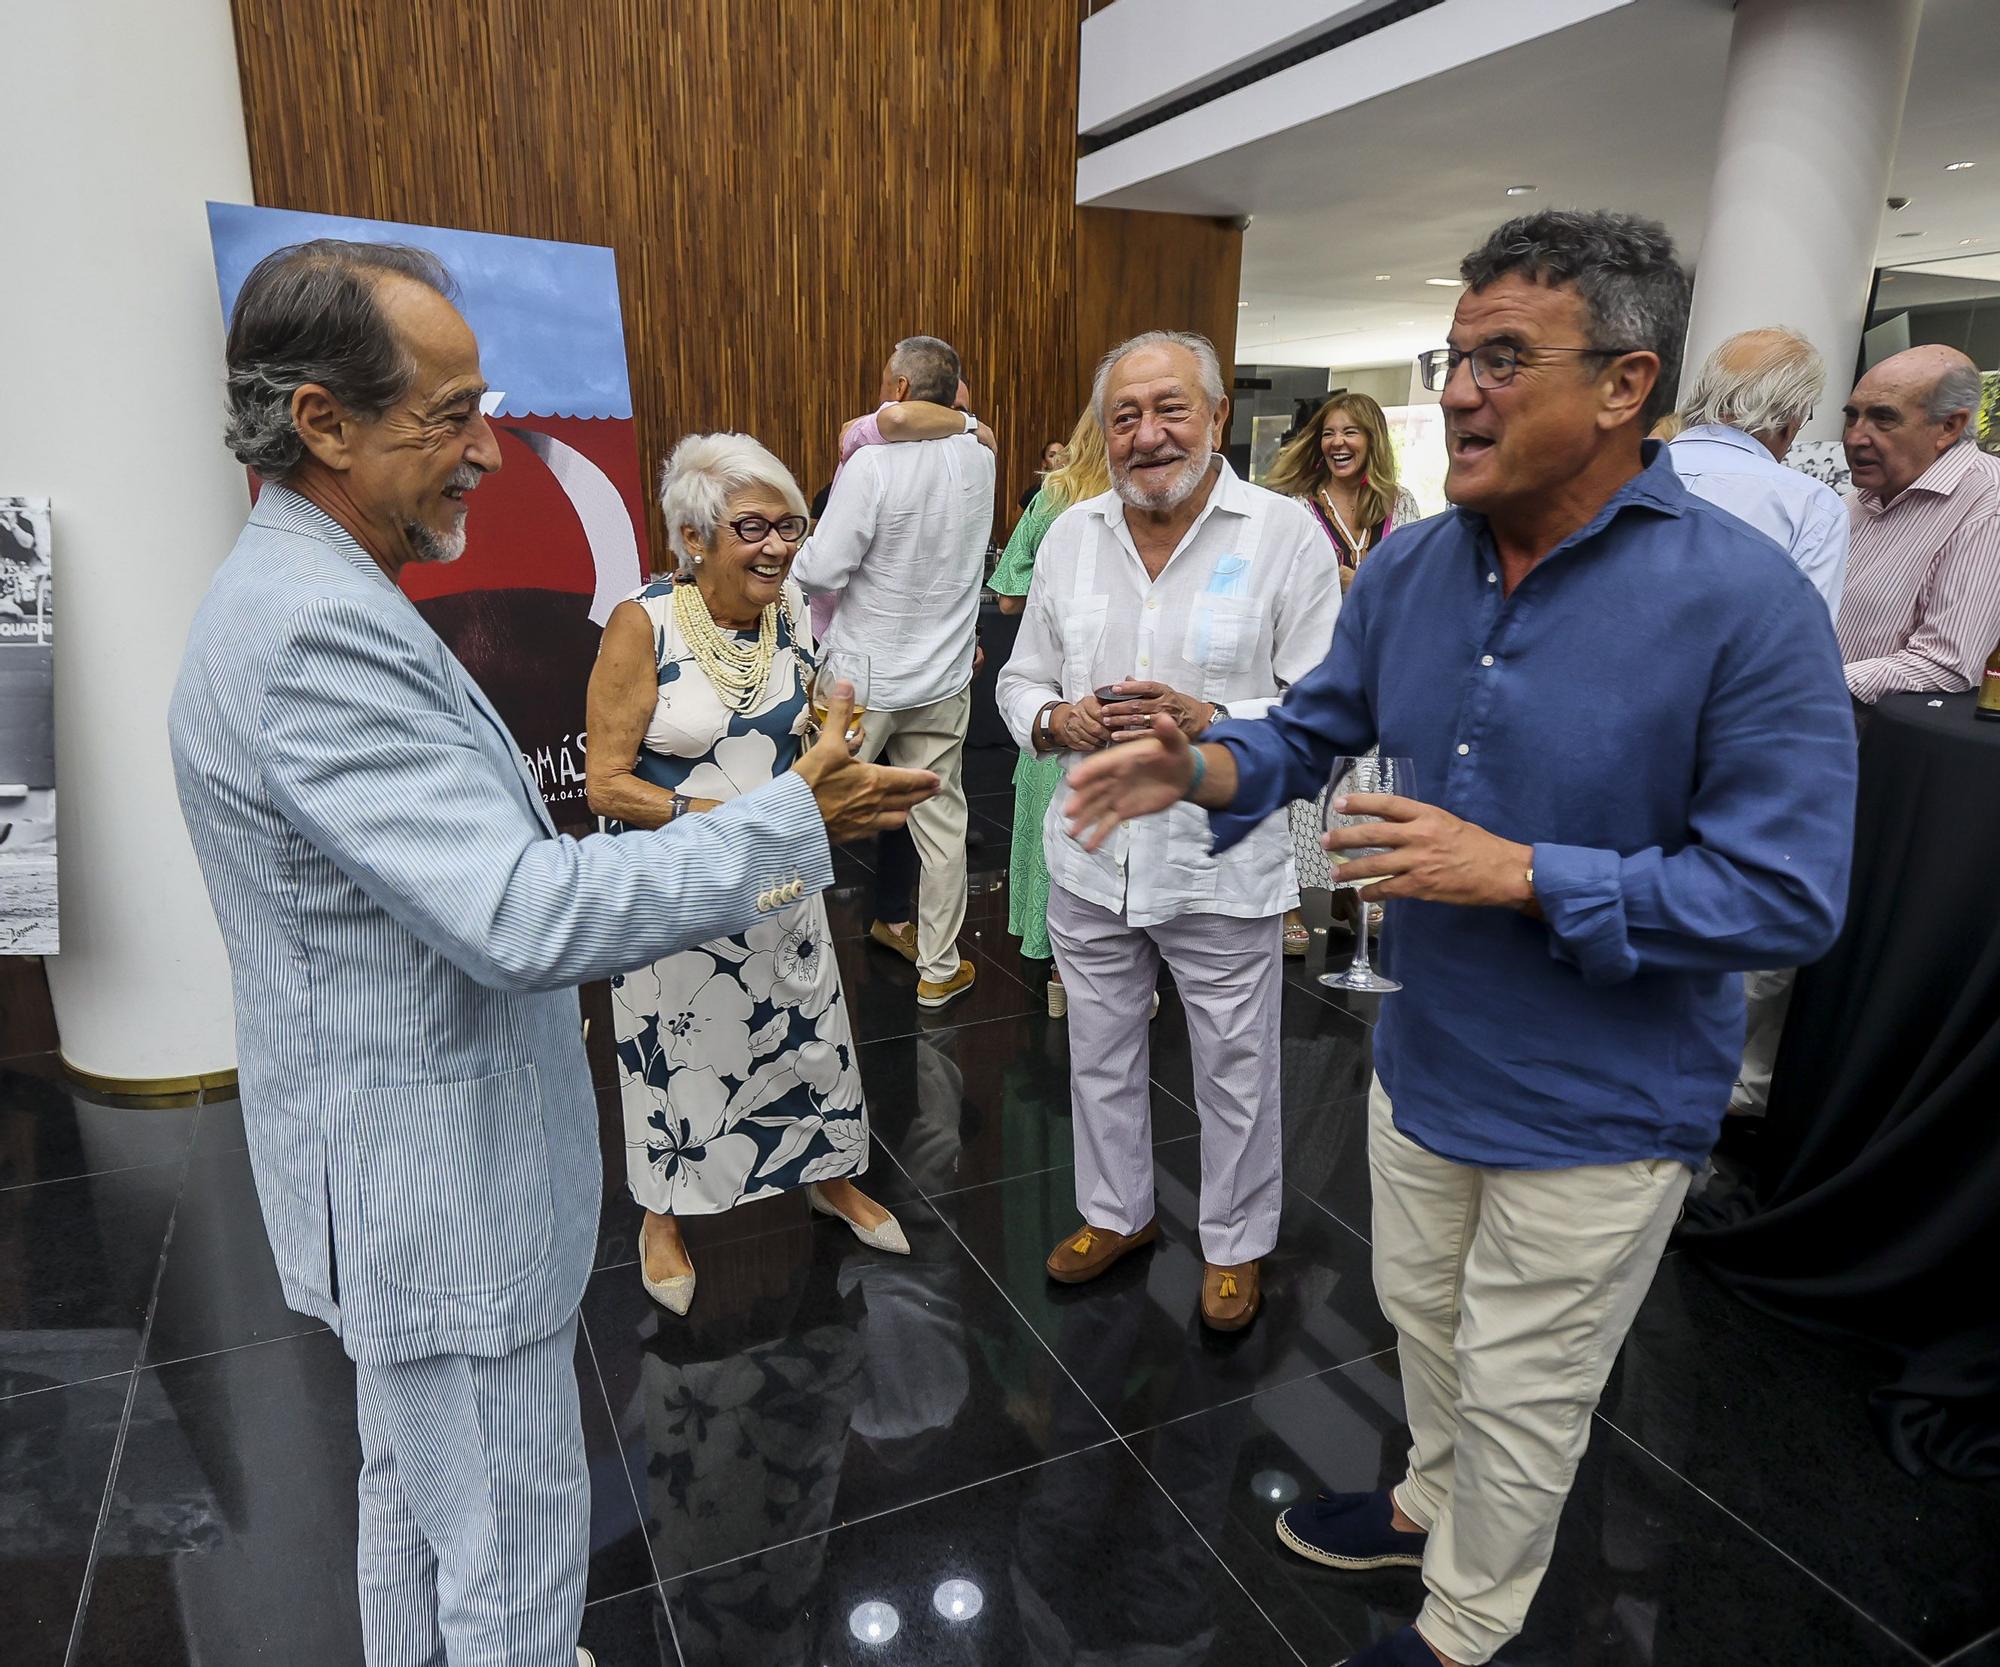 El diestro Luis Francisco Espl�; Mari Vidal; Mariano Caballero y Toni Cabot, director del Club INFORMACI�N.jpg